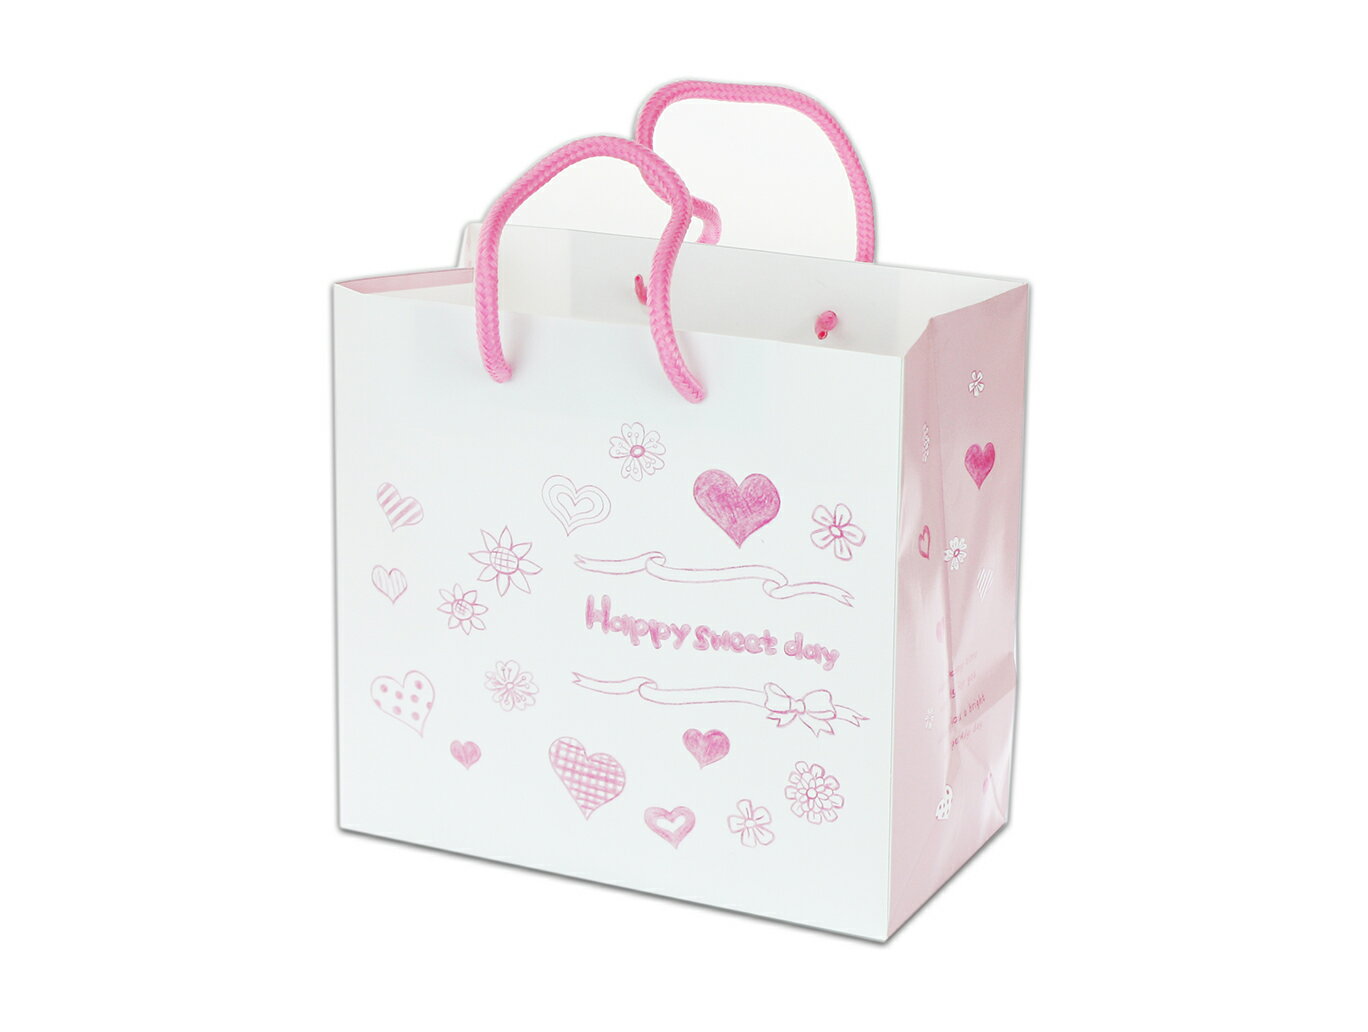 【H-02】粉色愛心紙袋 兩種規格 手提袋 收納袋 平放袋 厚紙袋 生日禮品禮物袋 手繪風格 包裝袋 蛋糕盒袋 送禮自用 購物袋 禮品袋 交換禮物袋